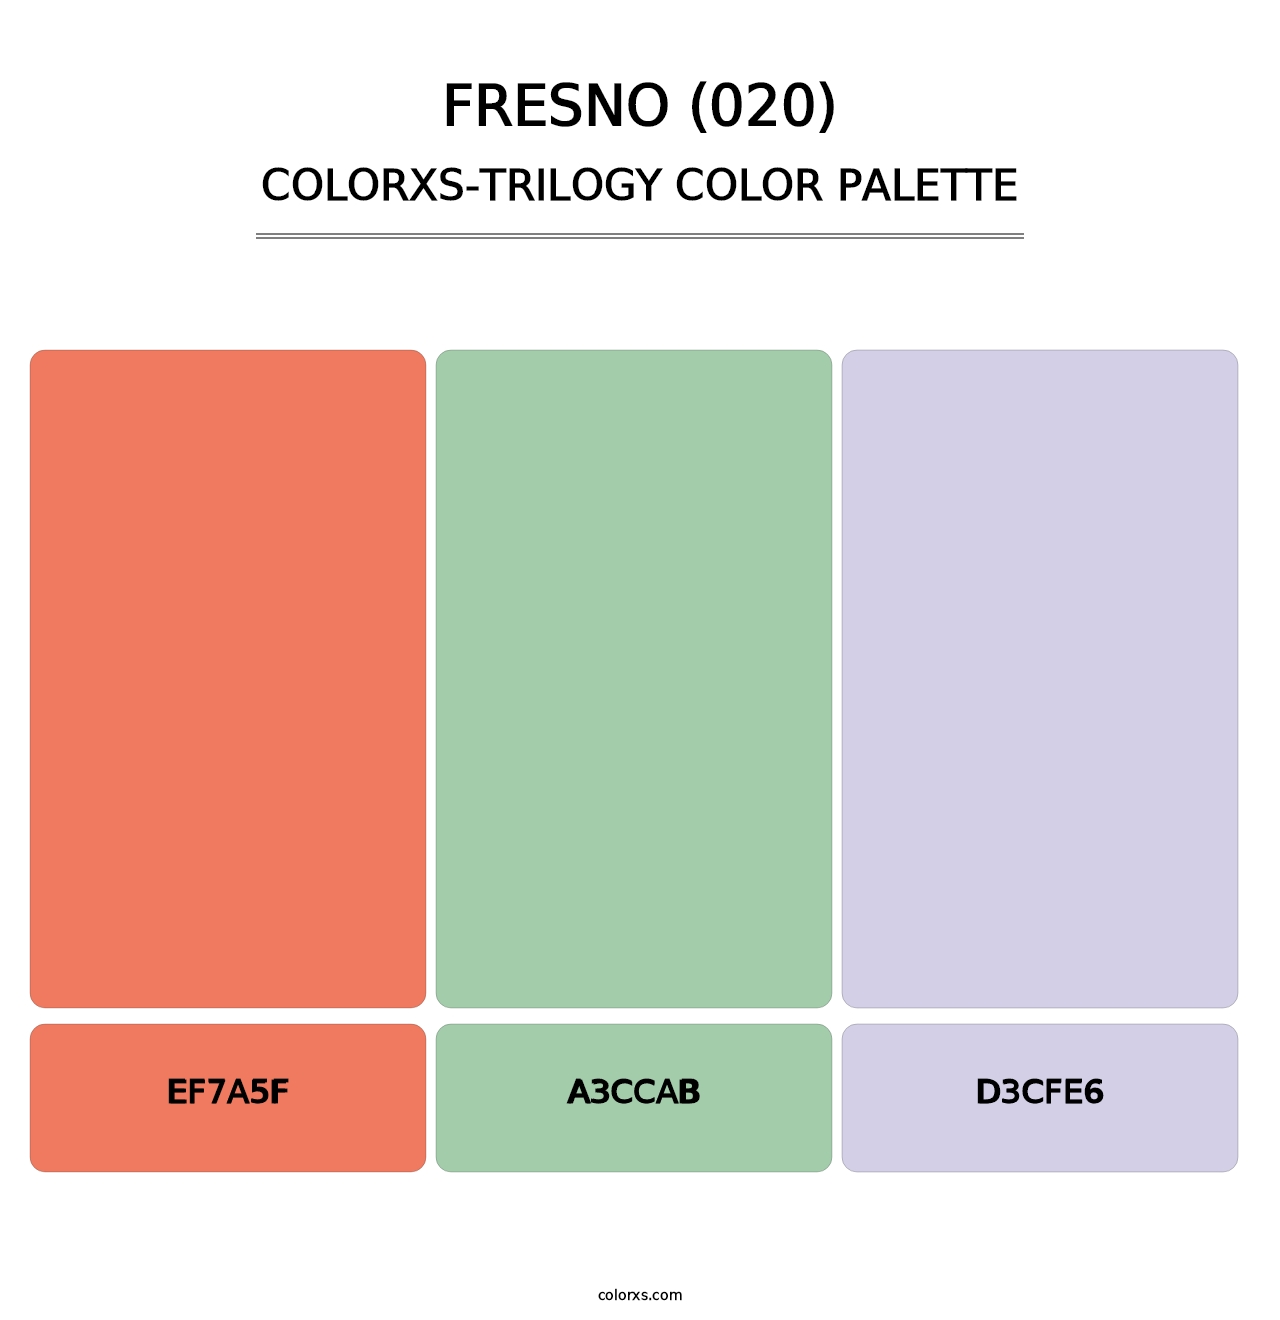 Fresno (020) - Colorxs Trilogy Palette